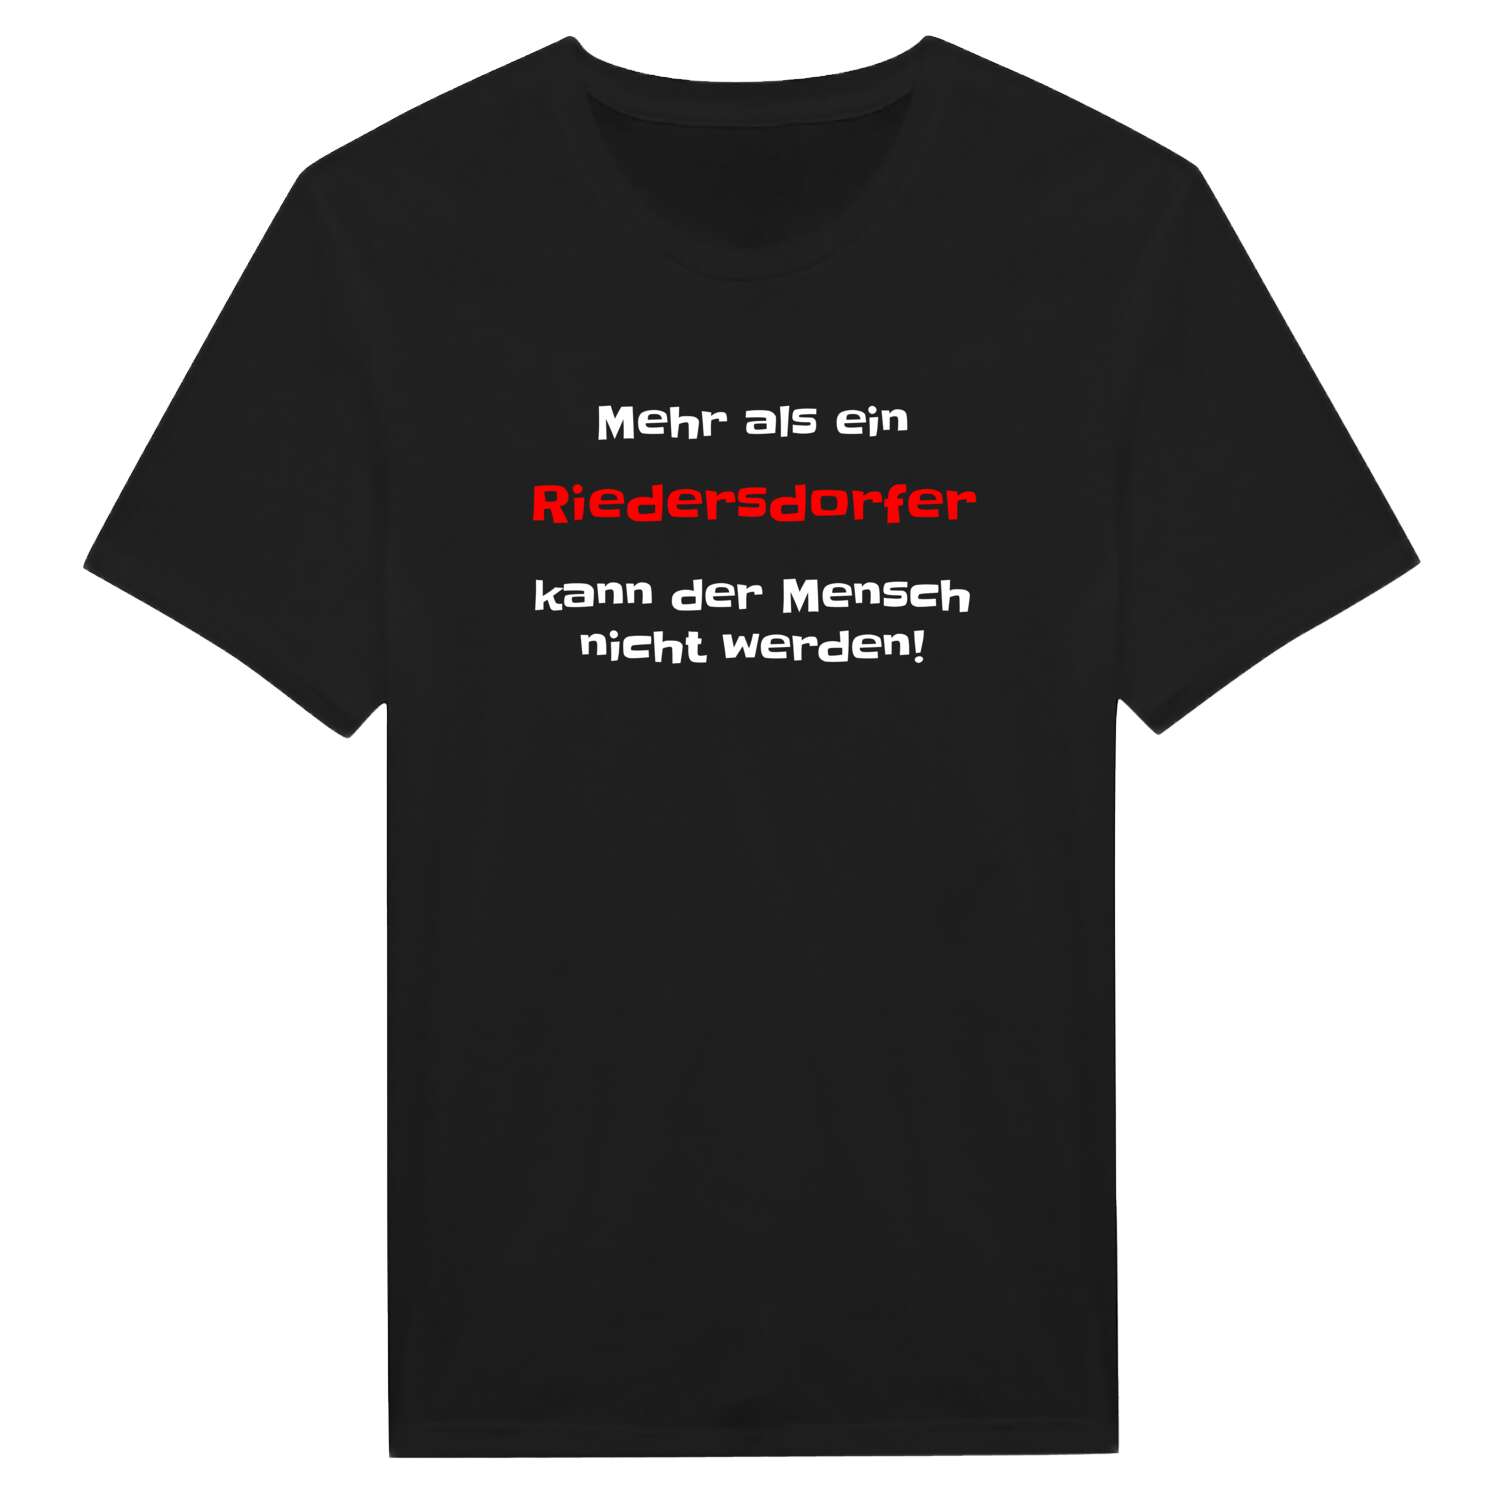 Riedersdorf T-Shirt »Mehr als ein«